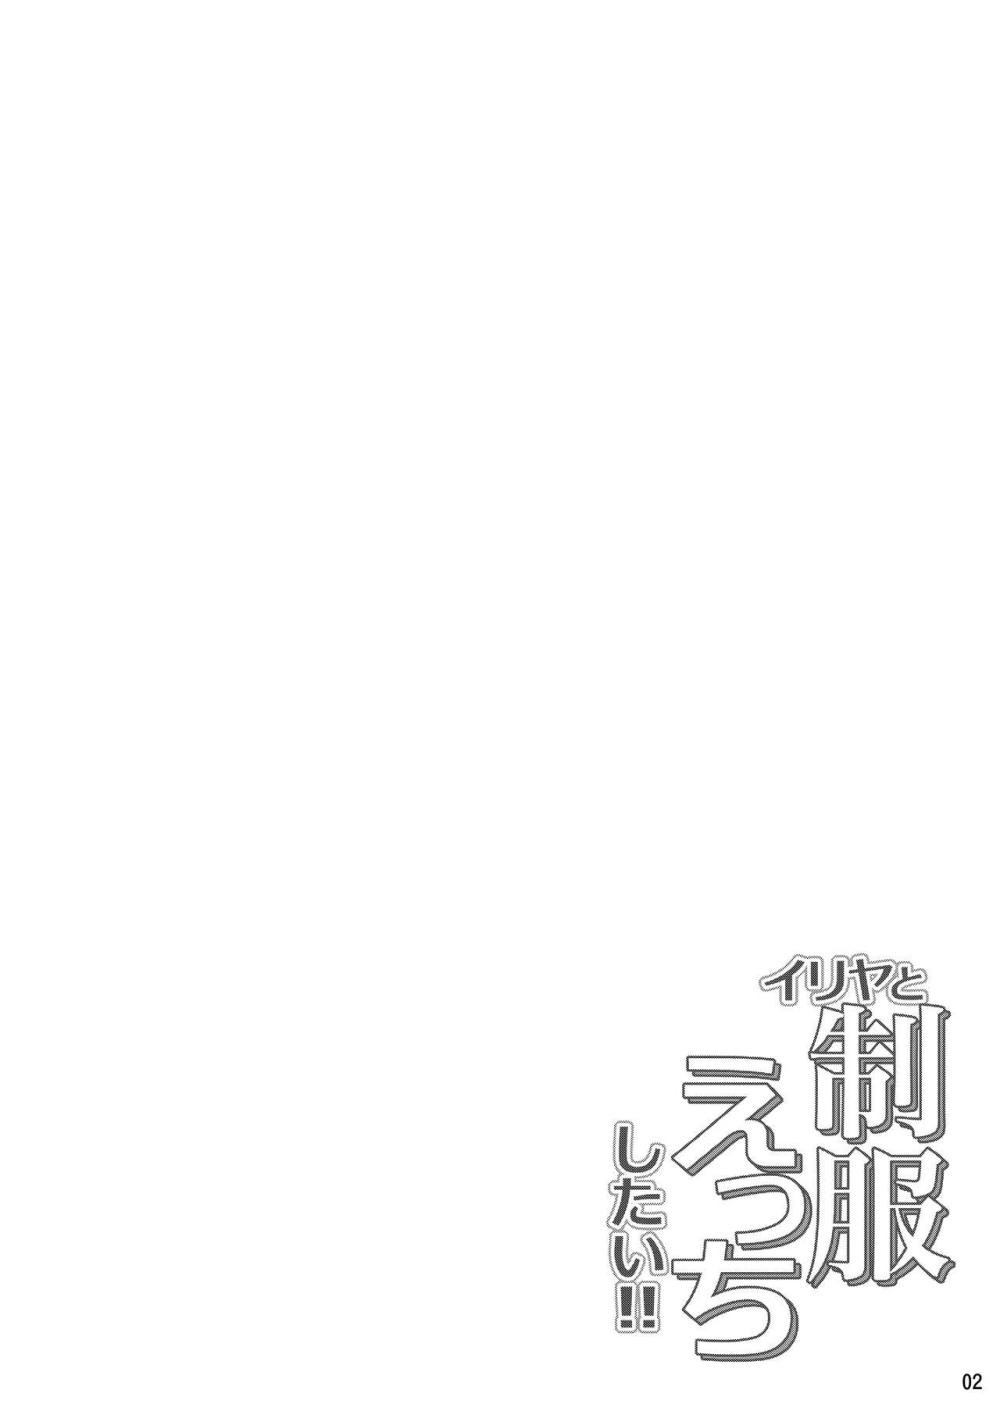 【Fate/kaleid liner プリズマ☆イリヤ】制服姿のロリカワイリヤがお兄ちゃんに迫られて恥じらいアながら受け入れてイチャイチャ交わり合うコスプレ中出しエッチ3